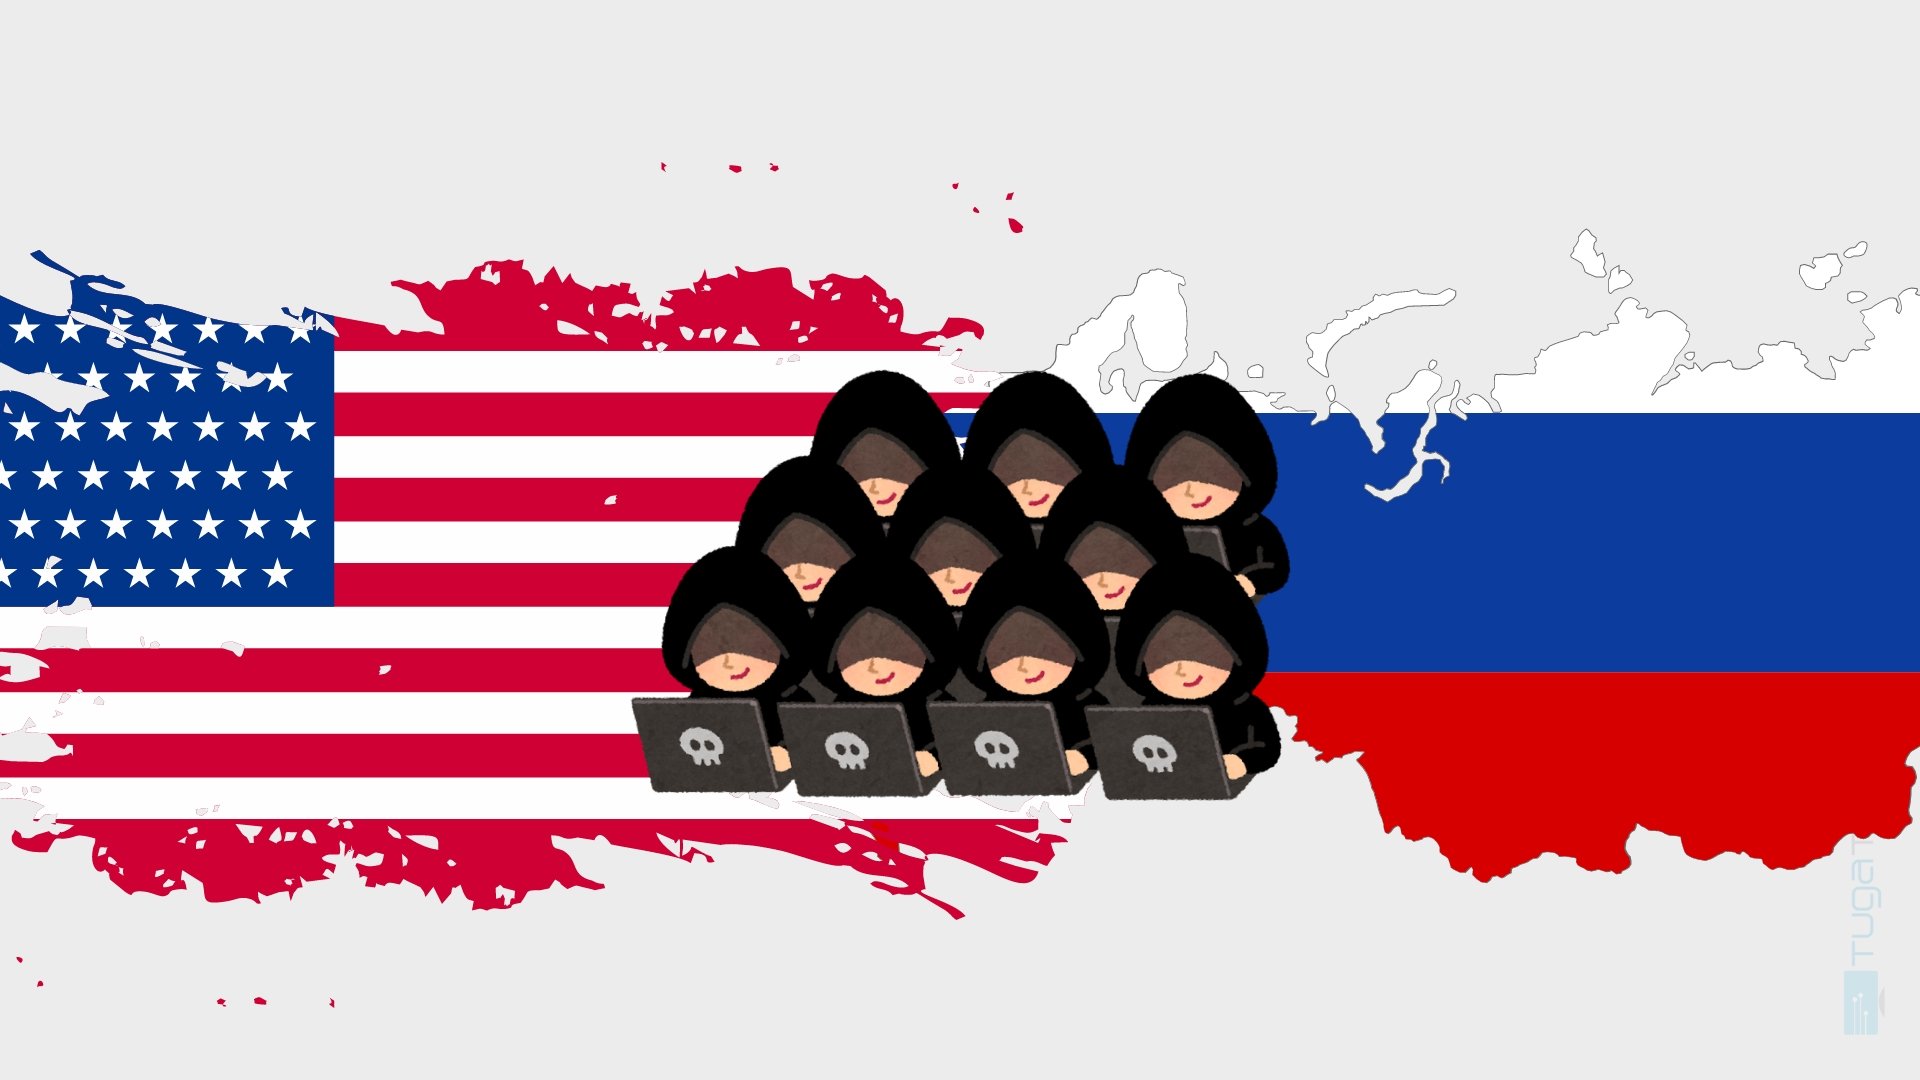 Bandeira da Russia e dos EUA com hackers